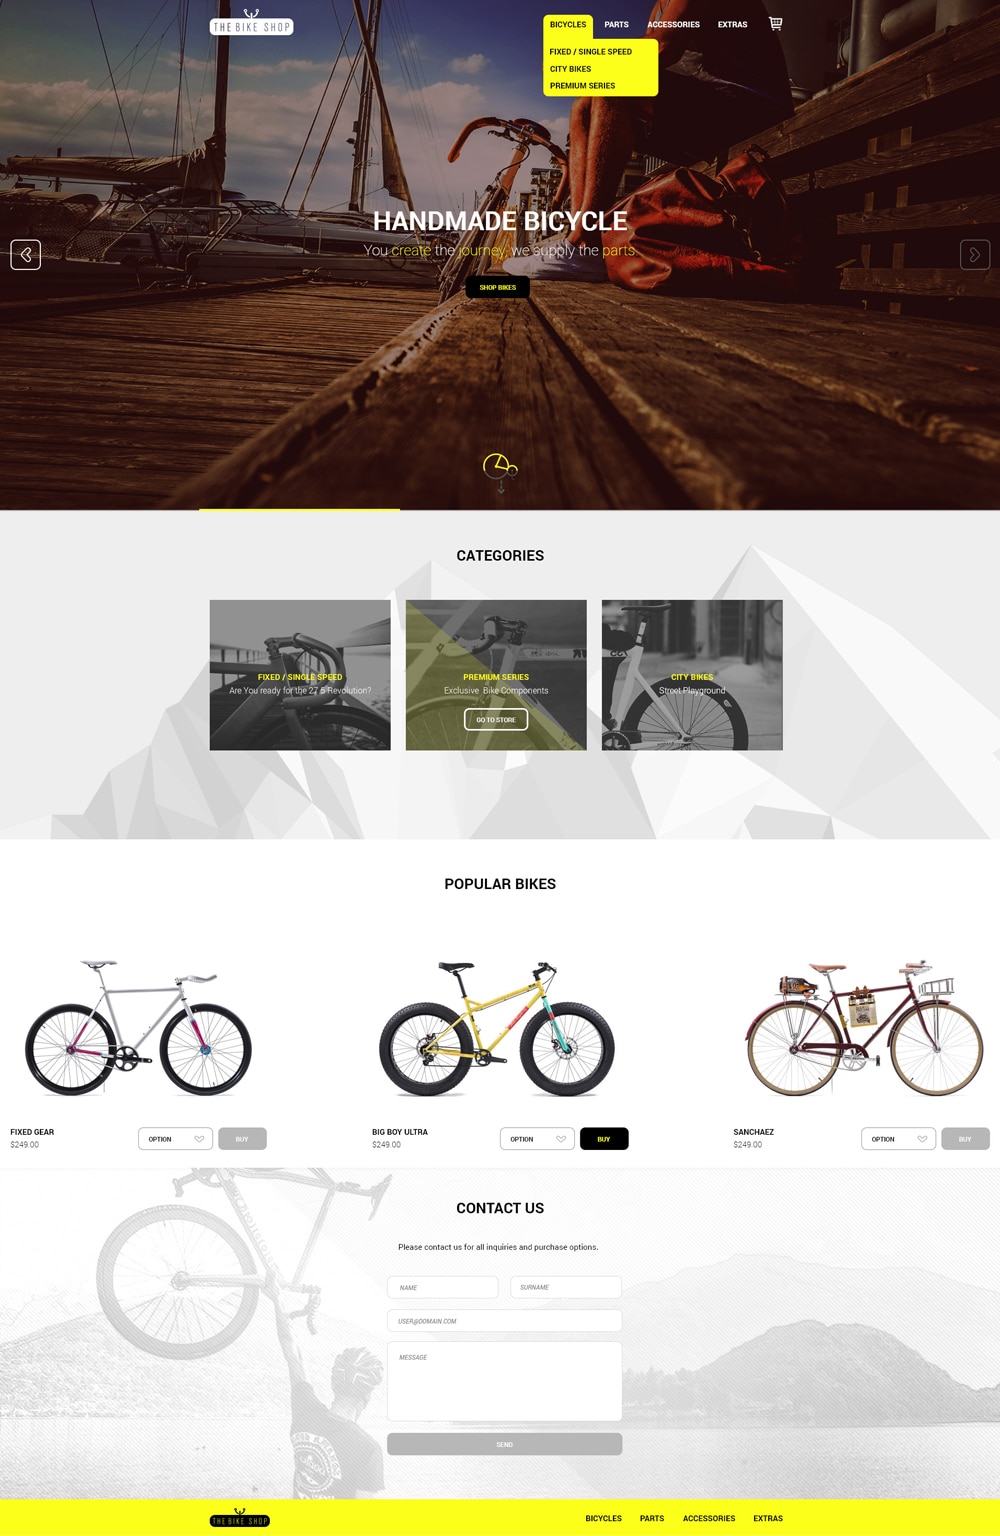 The Bike Shop - Free Home Page PSD